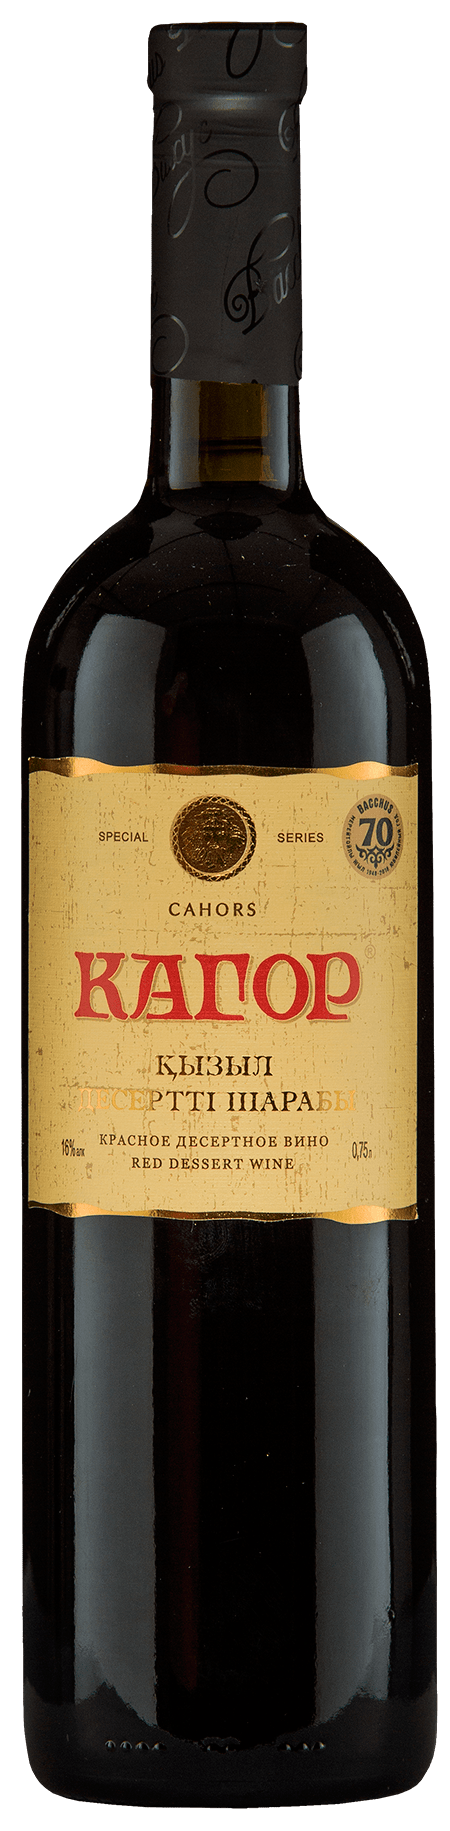 Кагор (десертное вино). Бахус вино. Кагор вино десертное красное. Вино Kagor Bacchus десертное.